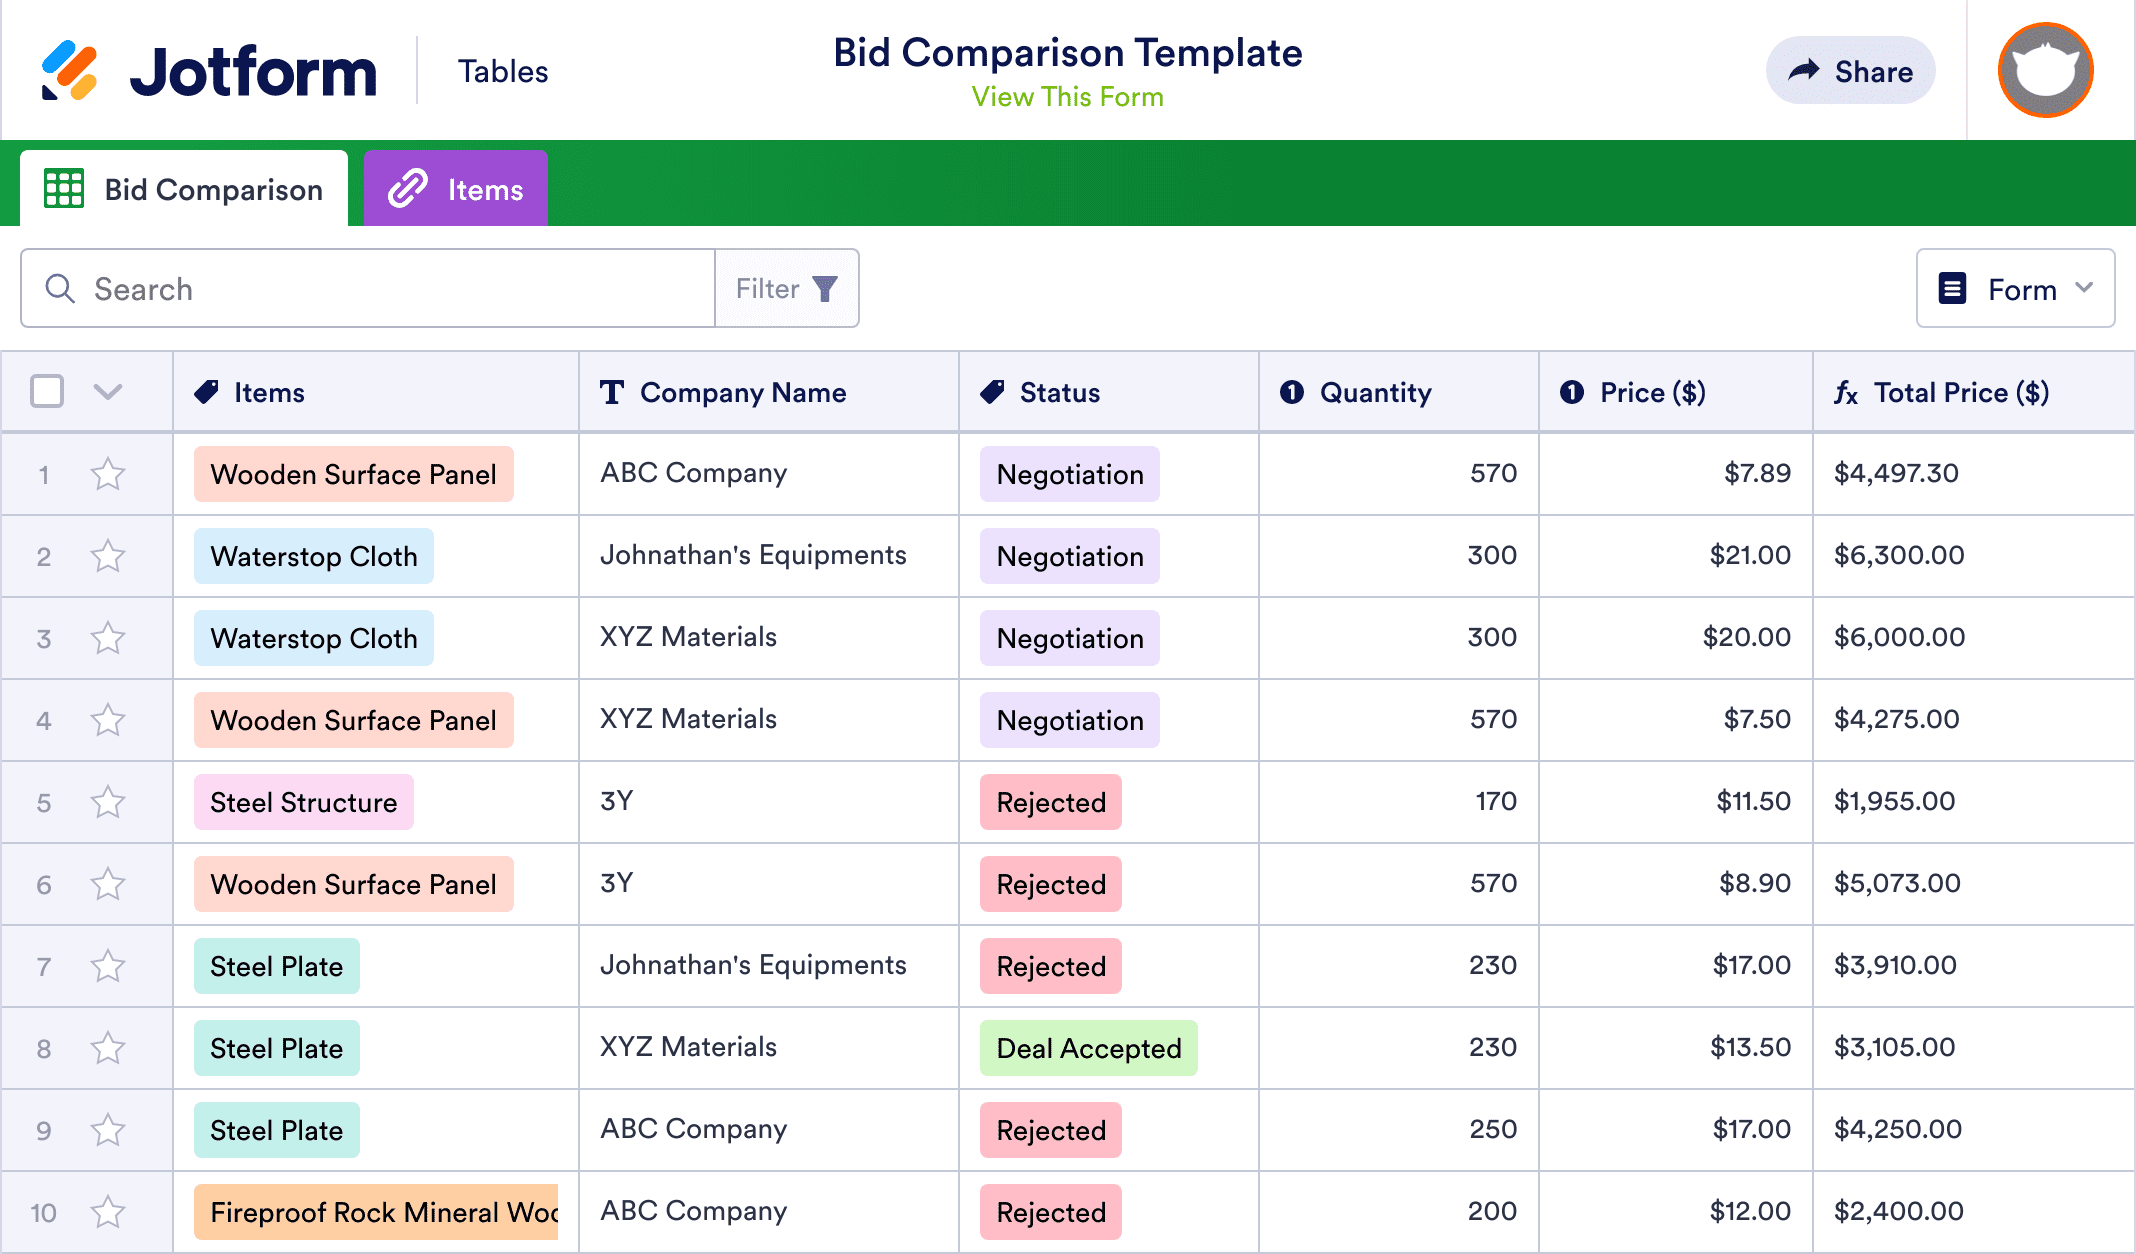 Bid Comparison Template | Jotform Tables